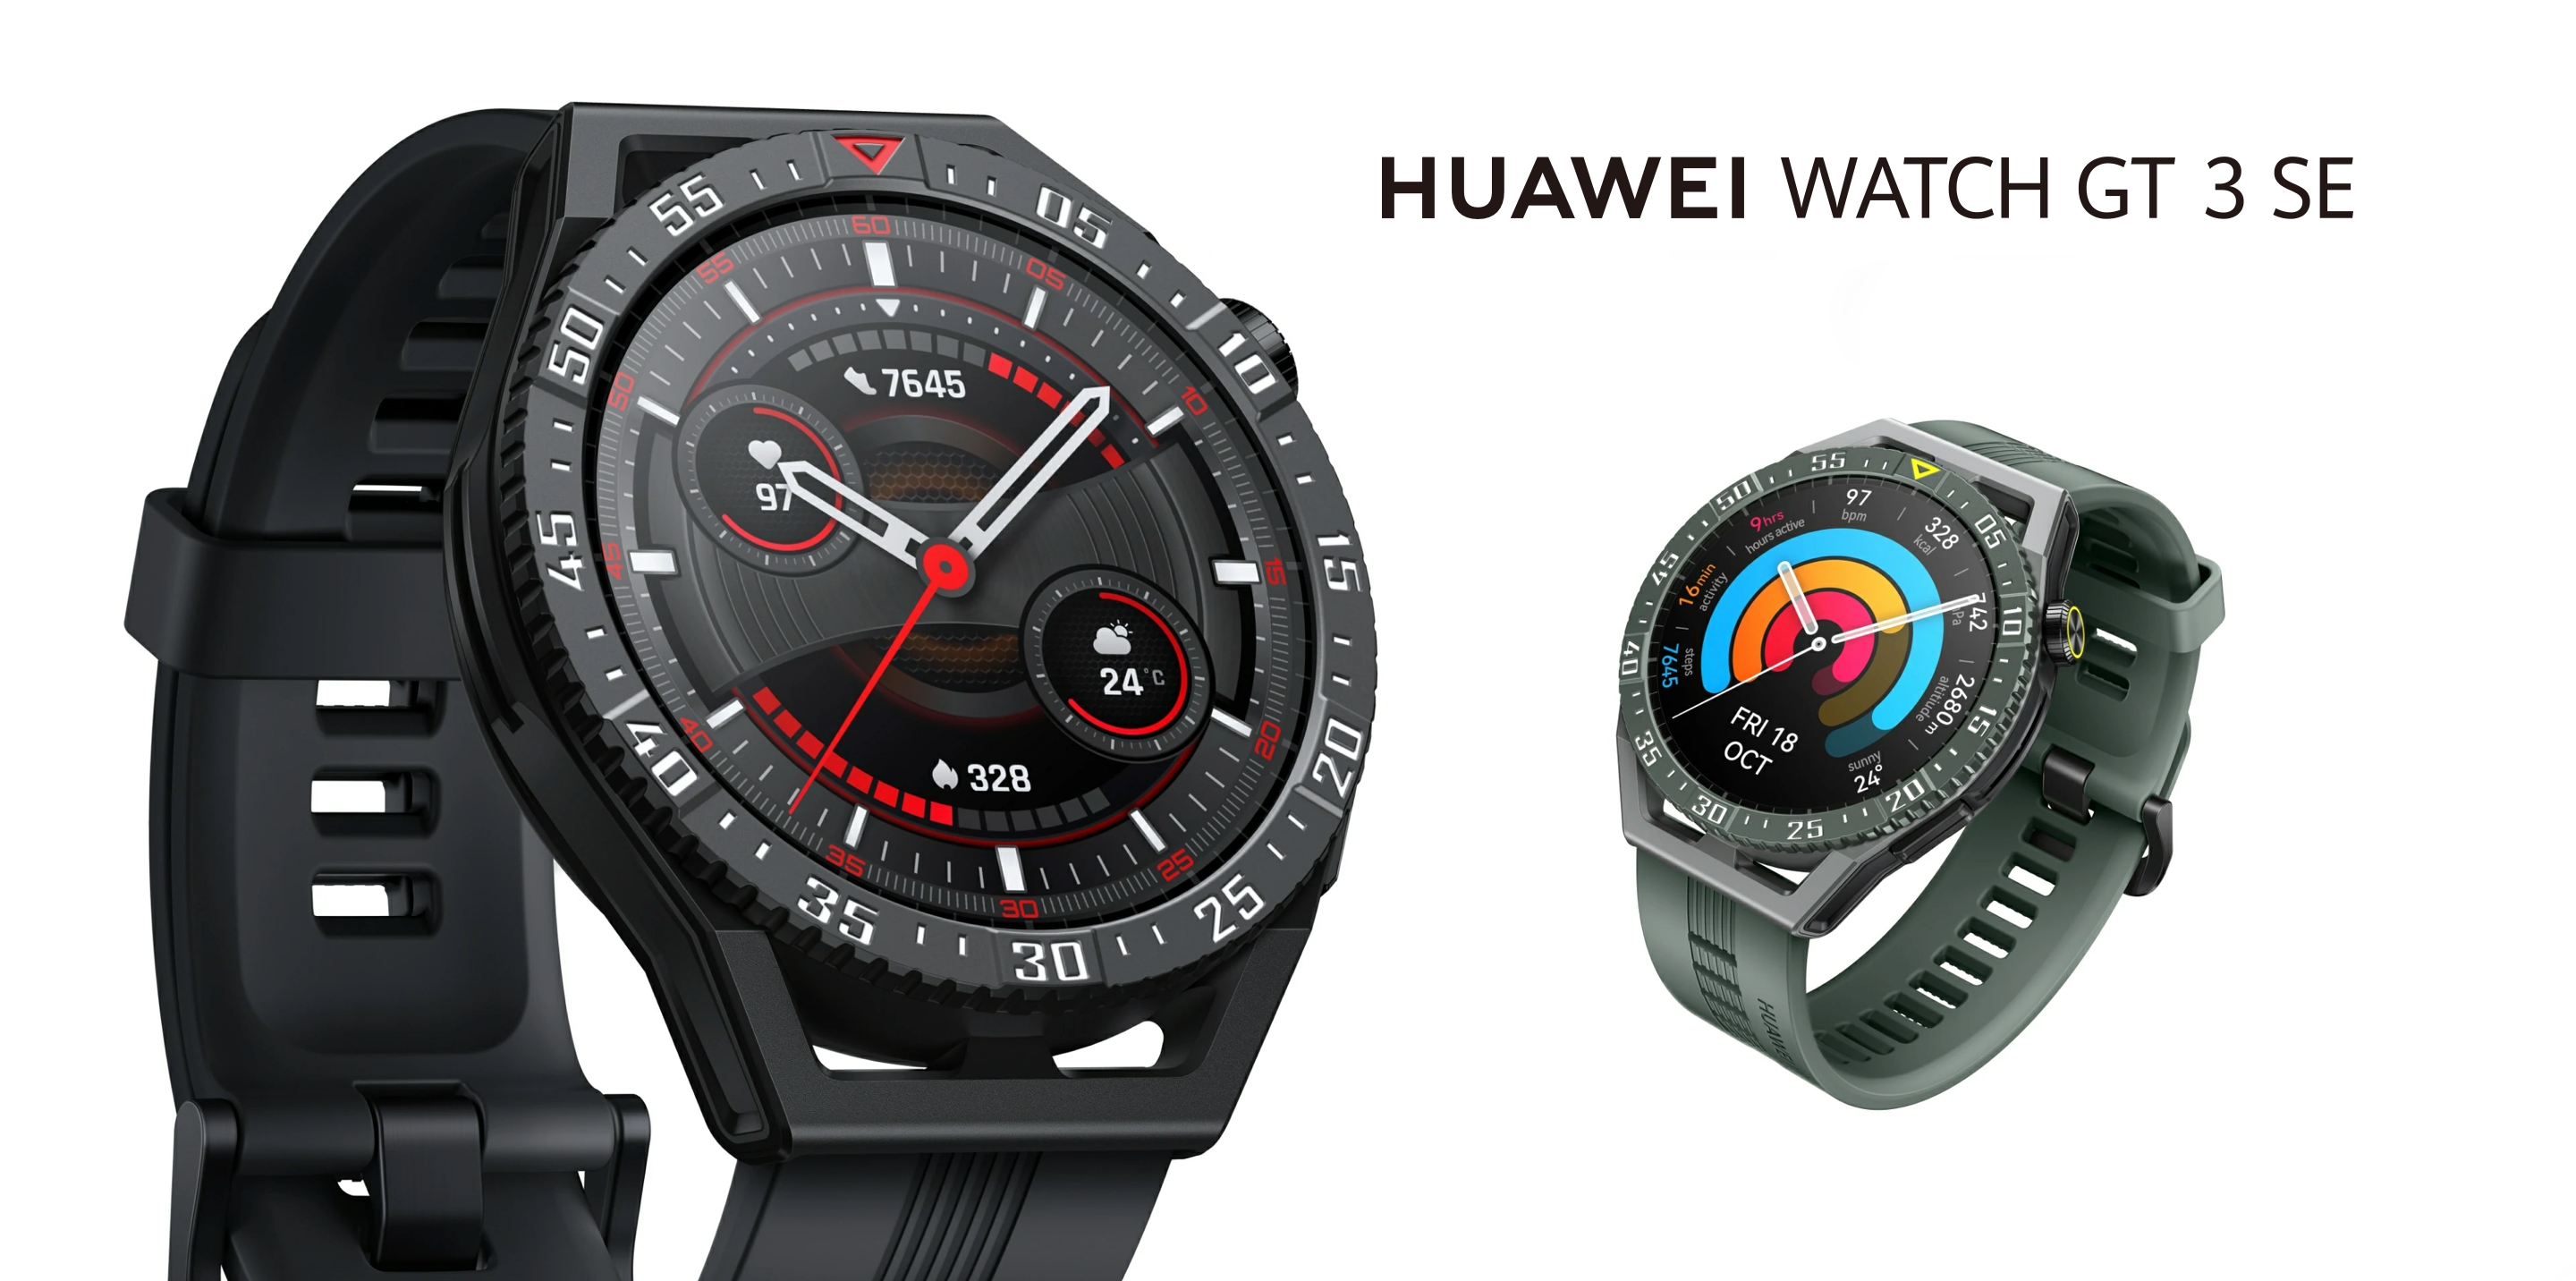 Huawei Watch GT 3 SE: smartwatch para el mercado global con pantalla AMOLED, protección contra el agua, sensor de SpO2 y batería de hasta 14 días de duración